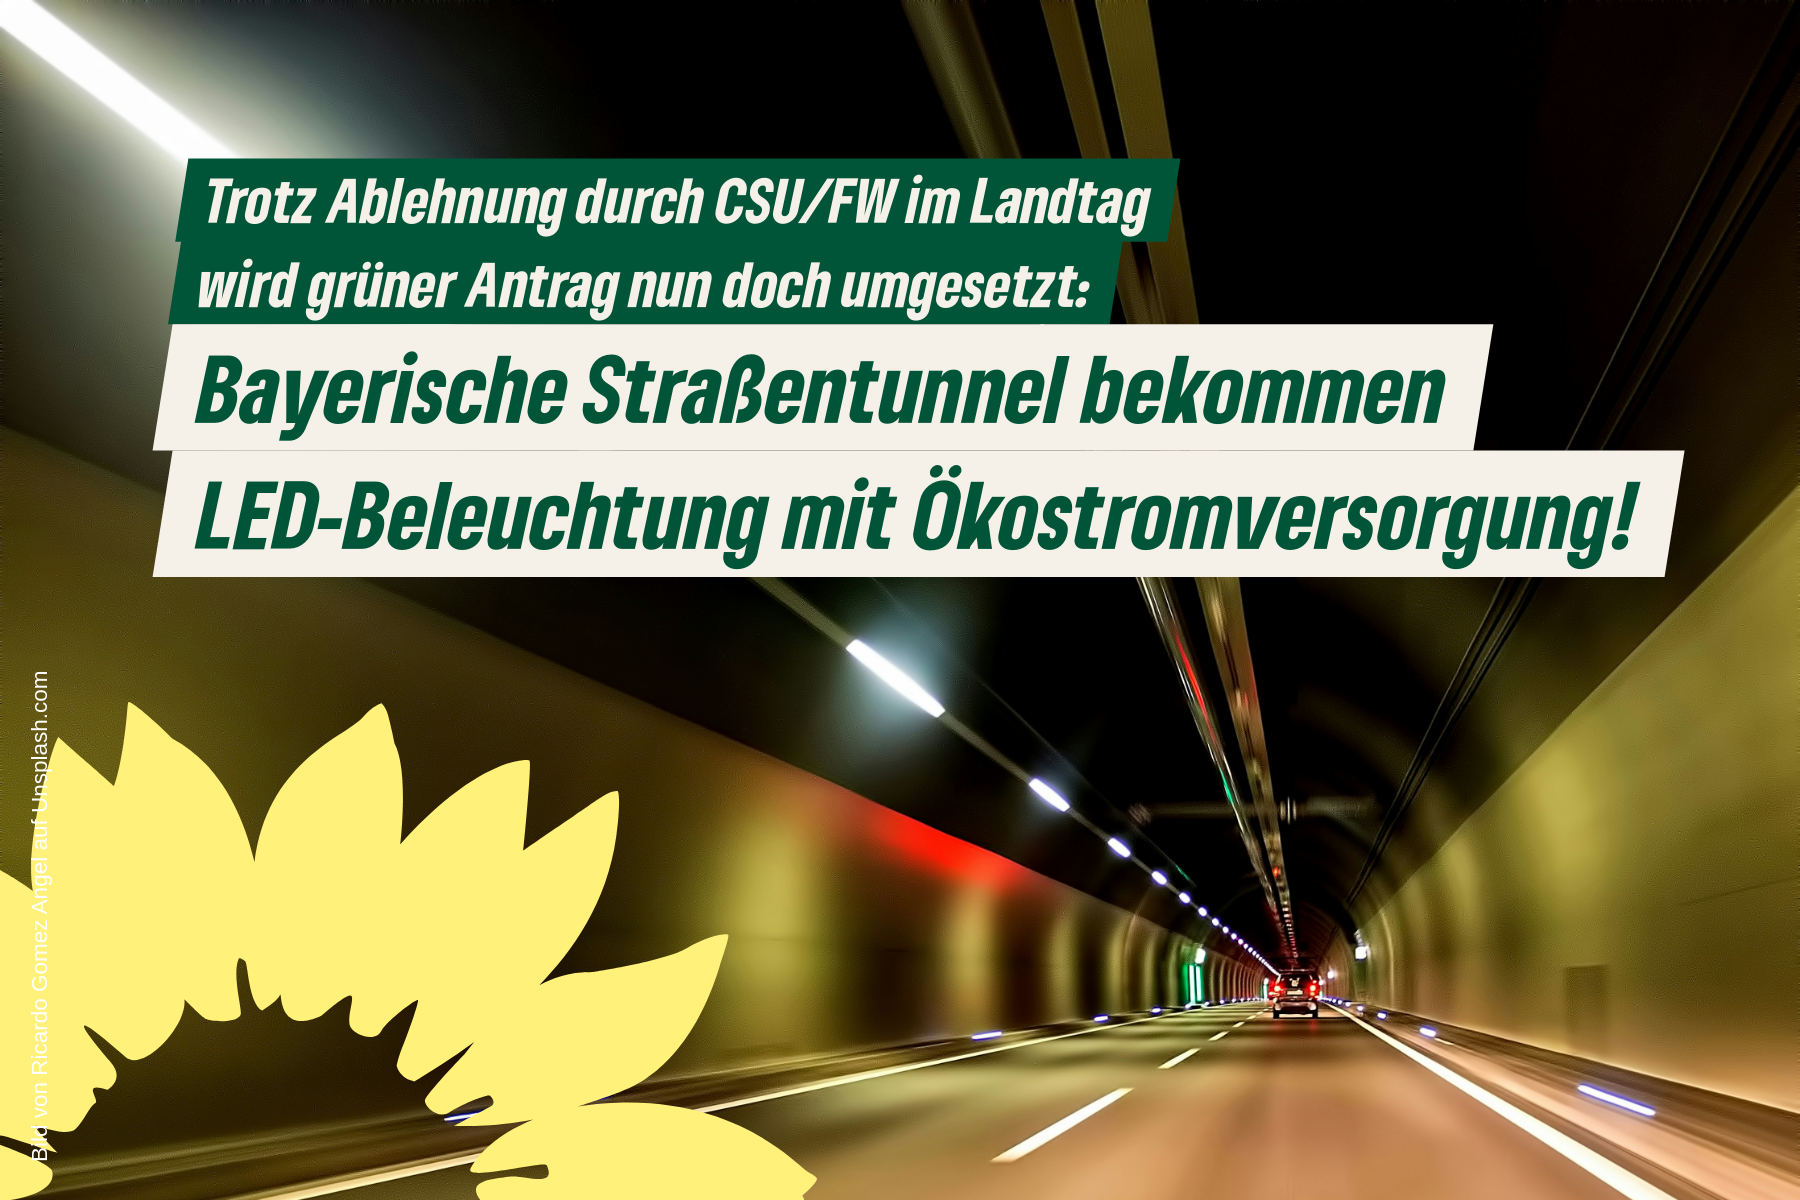 Blick entlang Fahrbahn in beleuchteter Straßentunnel-Röhre mit Sonnenblumenlogo und Text: Nach Ablehnung durch CSU/FW wird unser grüner Antrag nun doch umgesetzt und Straßentunnel bekommen LED-Beleuchtung und dezentrale Ökostromversorgung!